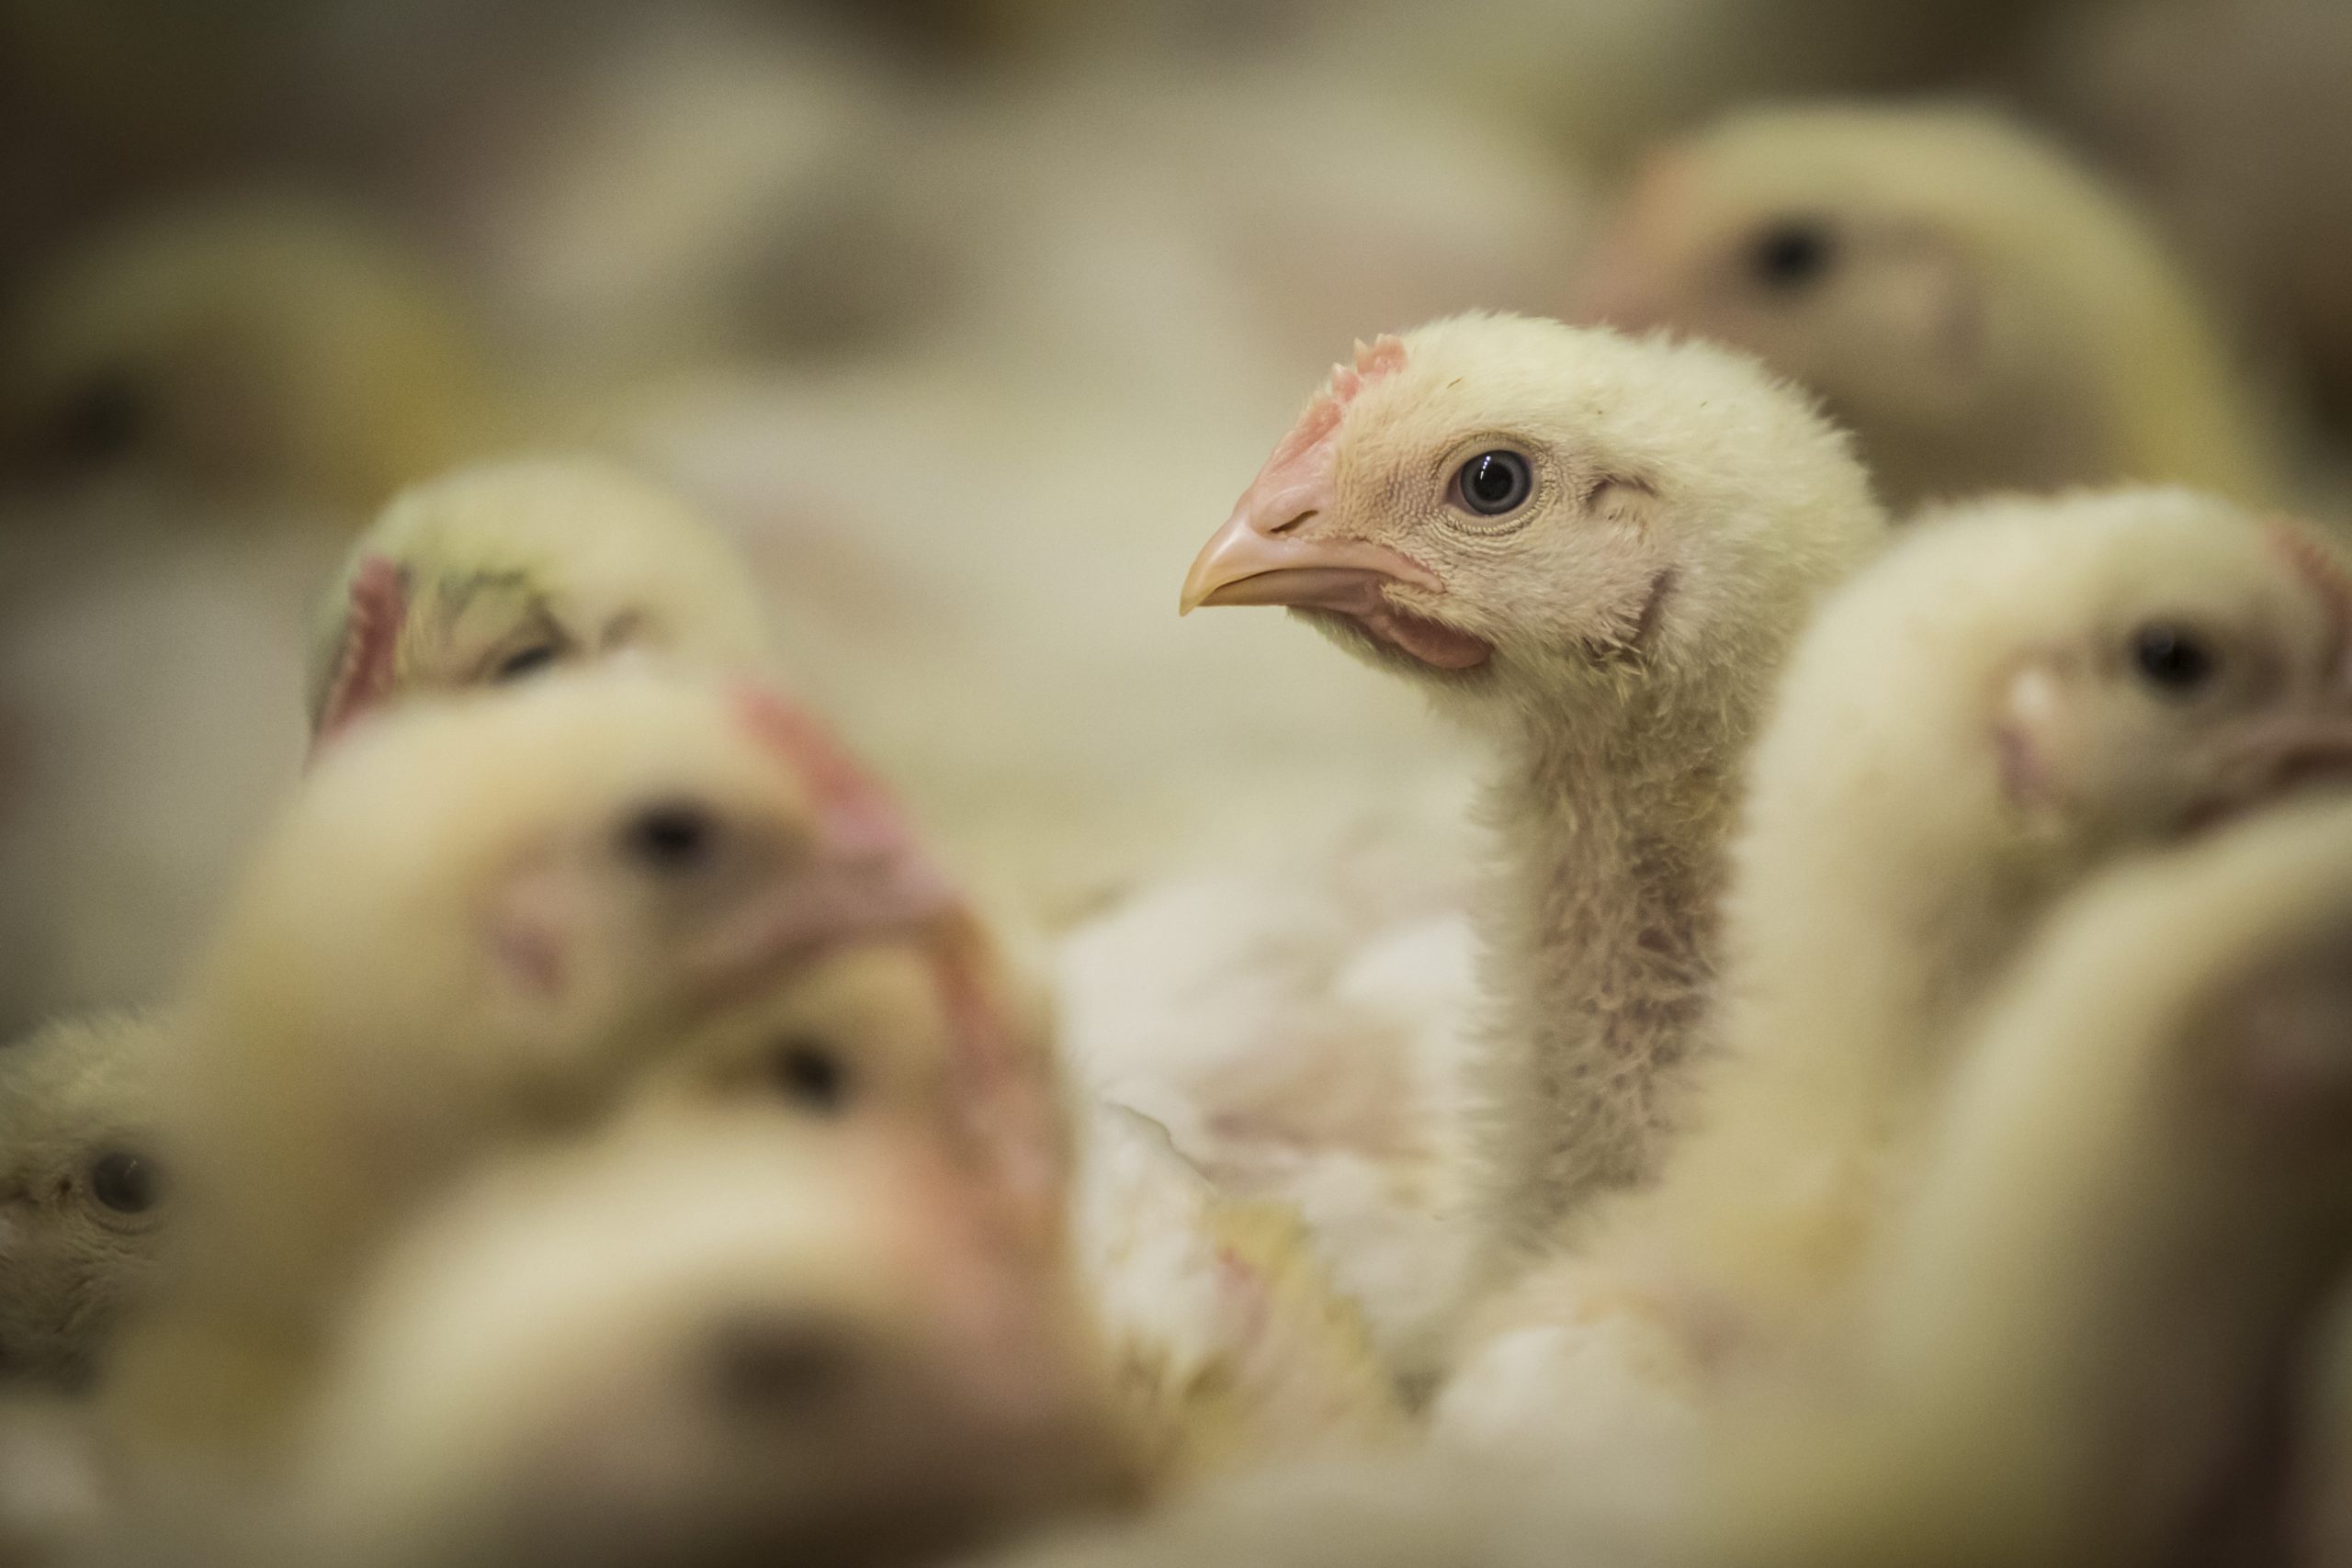 Protecting broiler chicken from fusariotoxins. Photo: Bertil van Beek